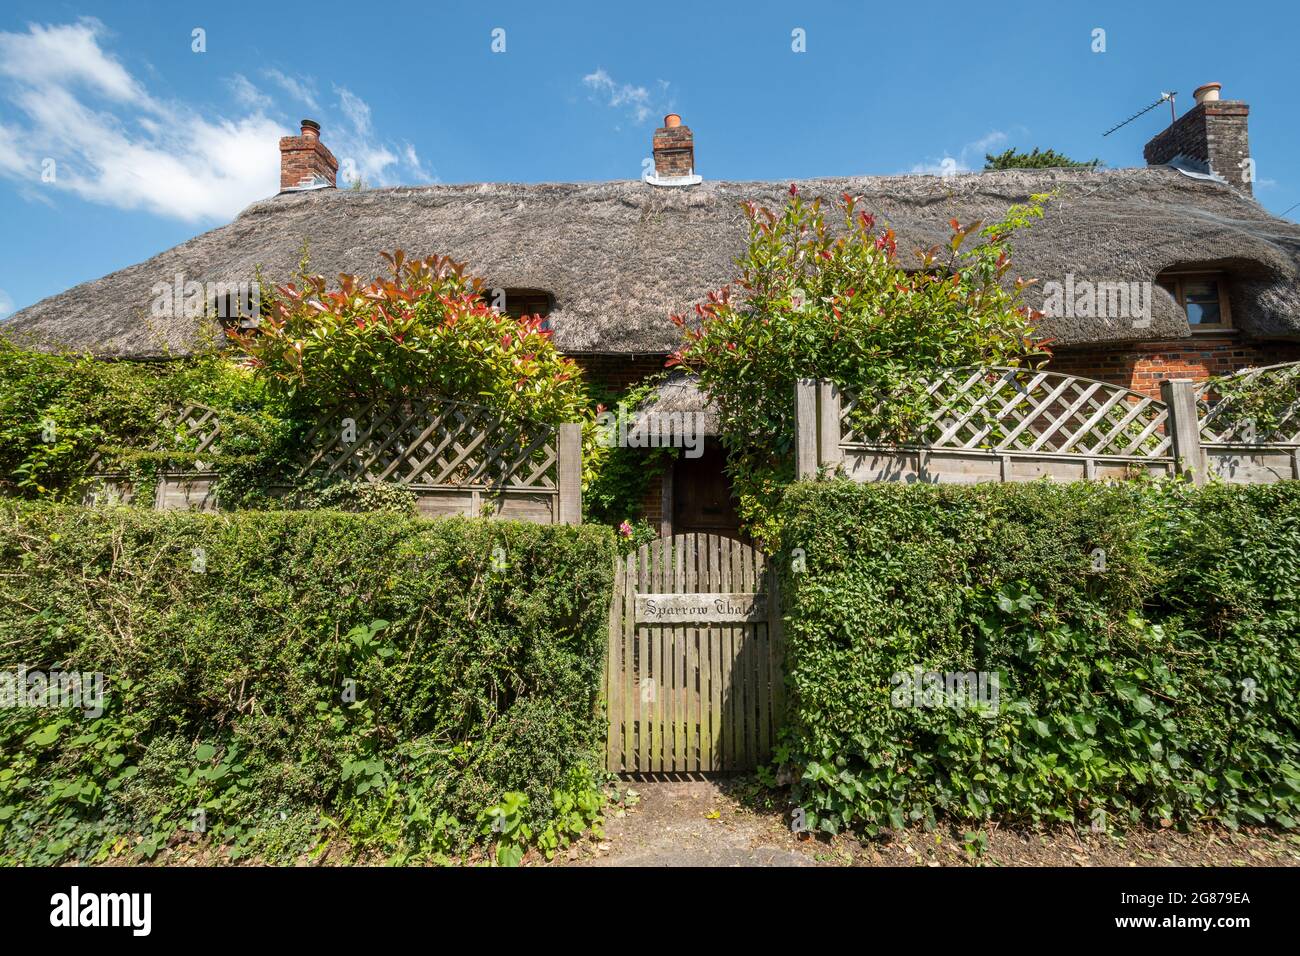 Jolie maison de chaume du XVIIe siècle dans le village de Robley, Hampshire, Angleterre, Royaume-Uni. Banque D'Images